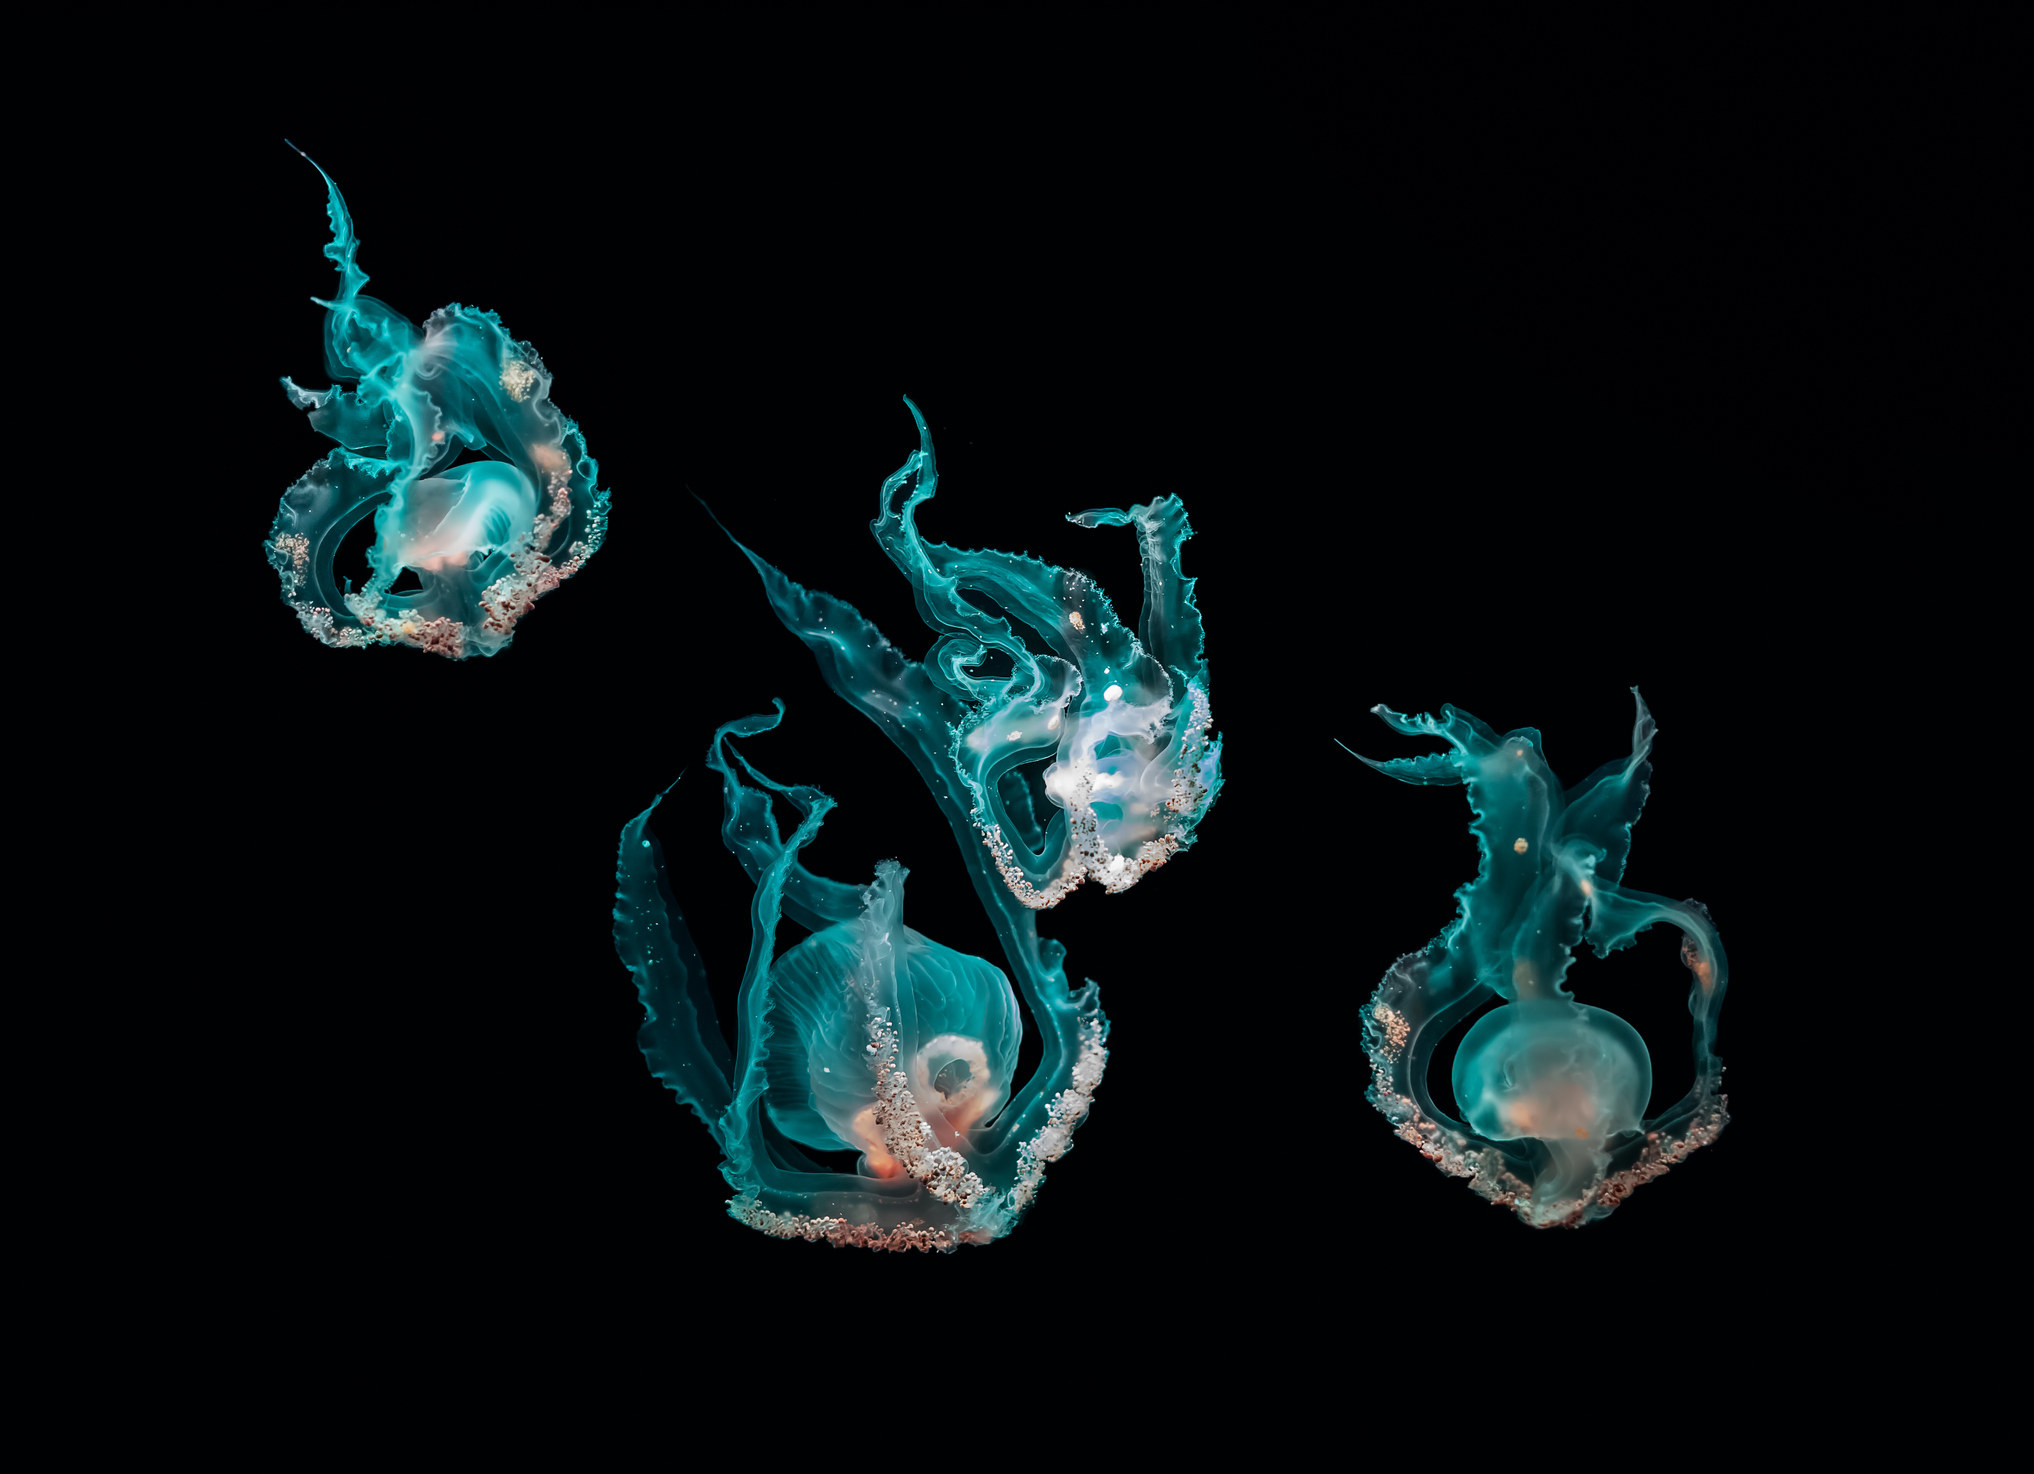 Jellyfish underwater on black background